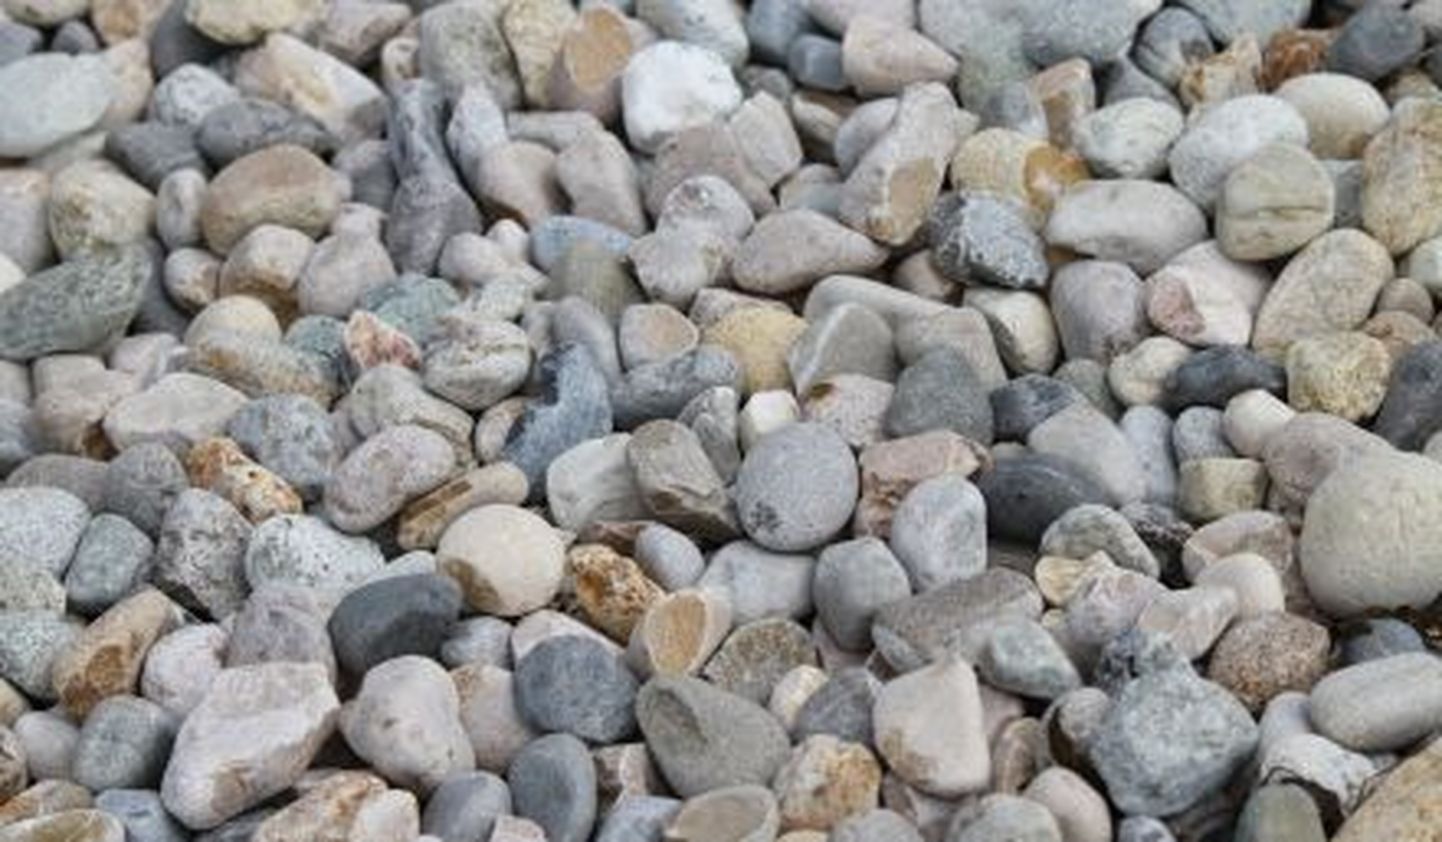 Ameeriklanna süttis fosforit sisaldavate kivide tõttu